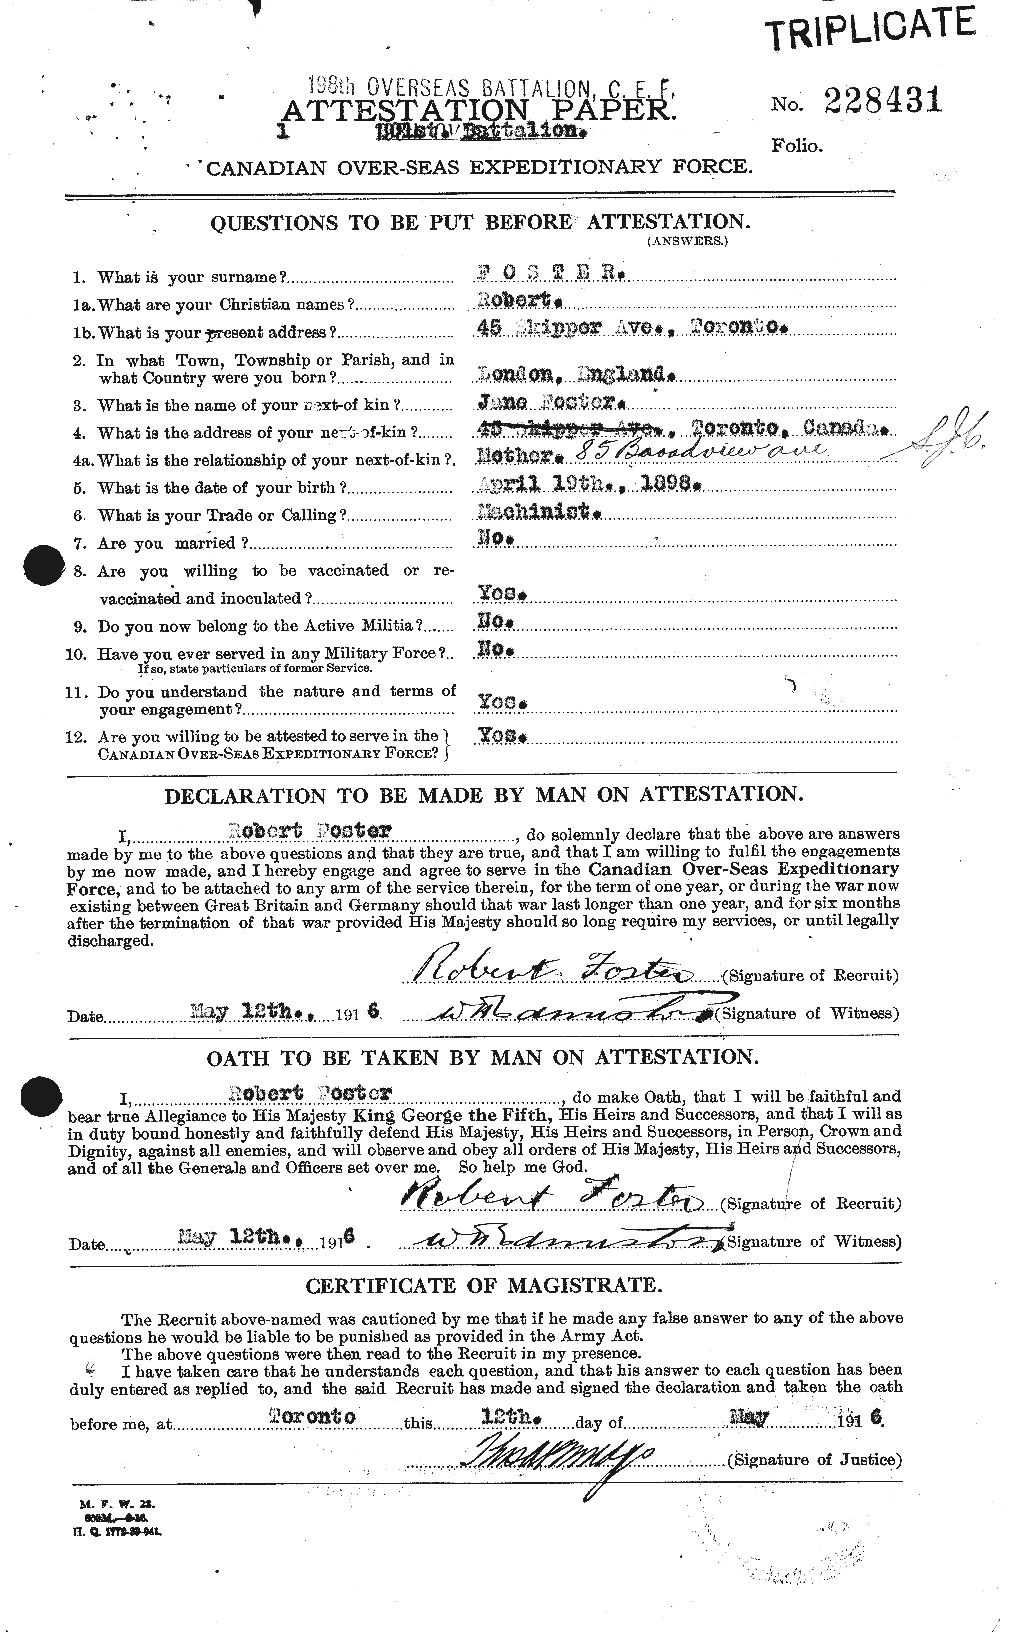 Dossiers du Personnel de la Première Guerre mondiale - CEC 335172a